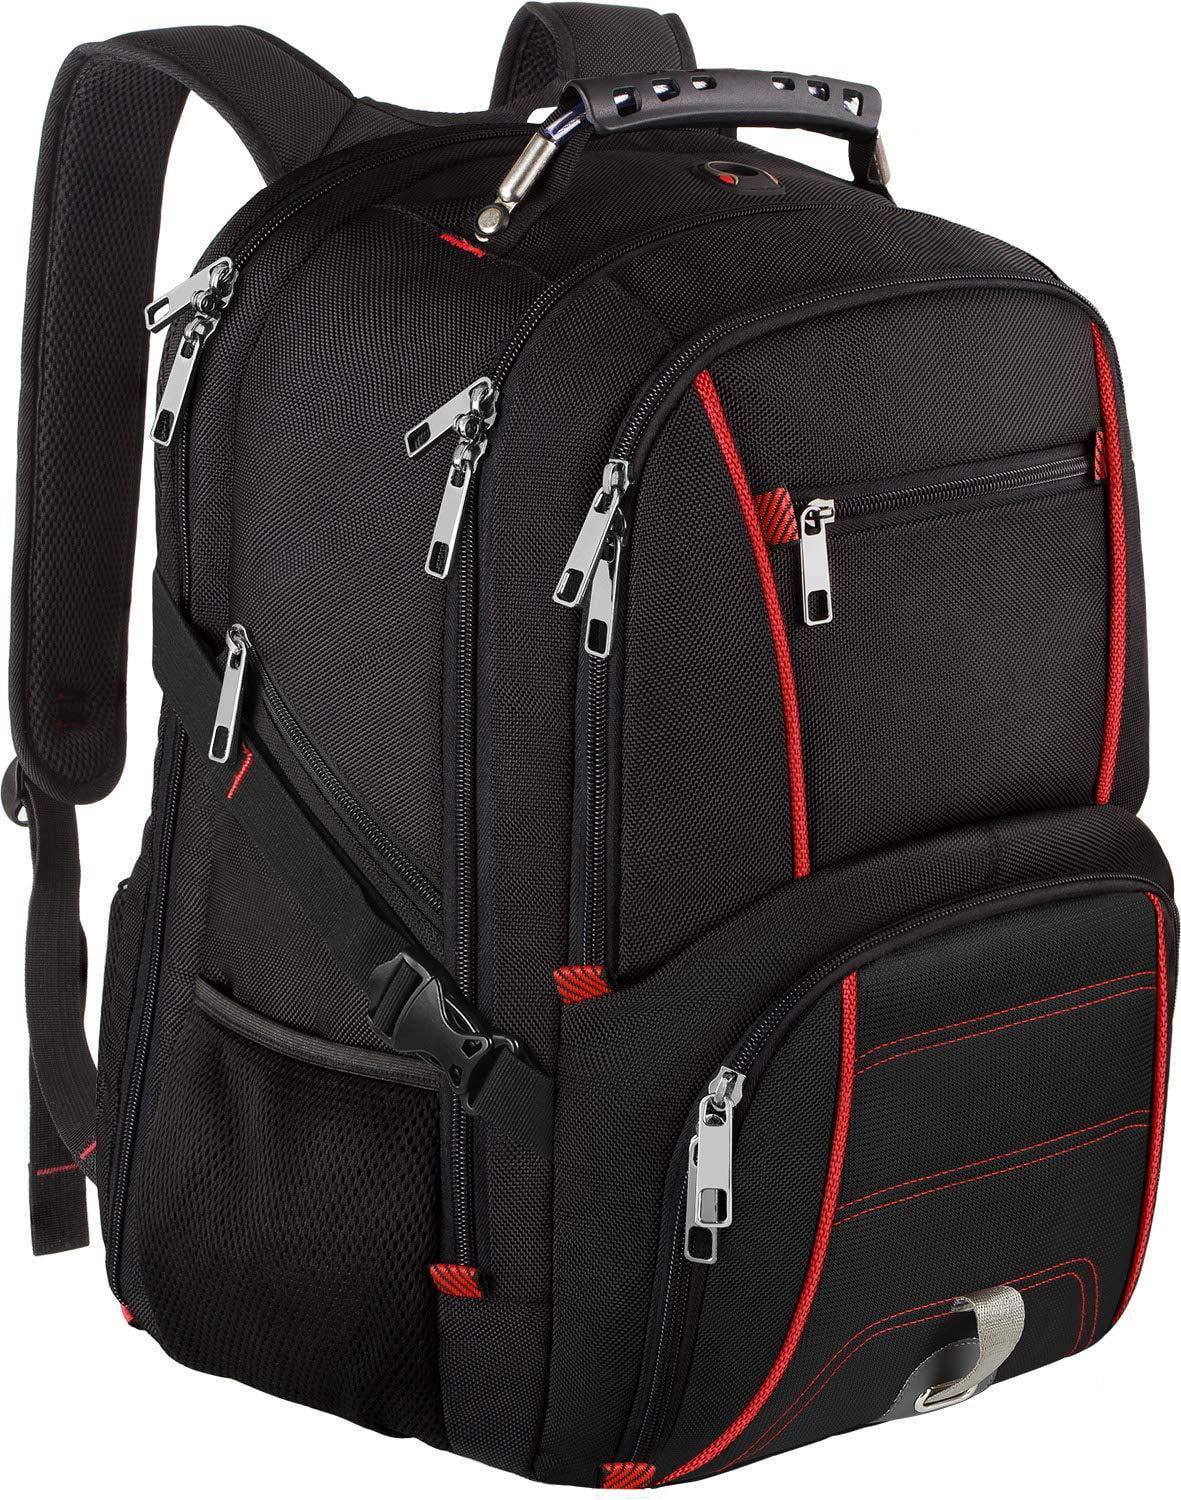 Thunderstorm Backpack Travel Bag Laptop Bag Stylish Large Capacity 